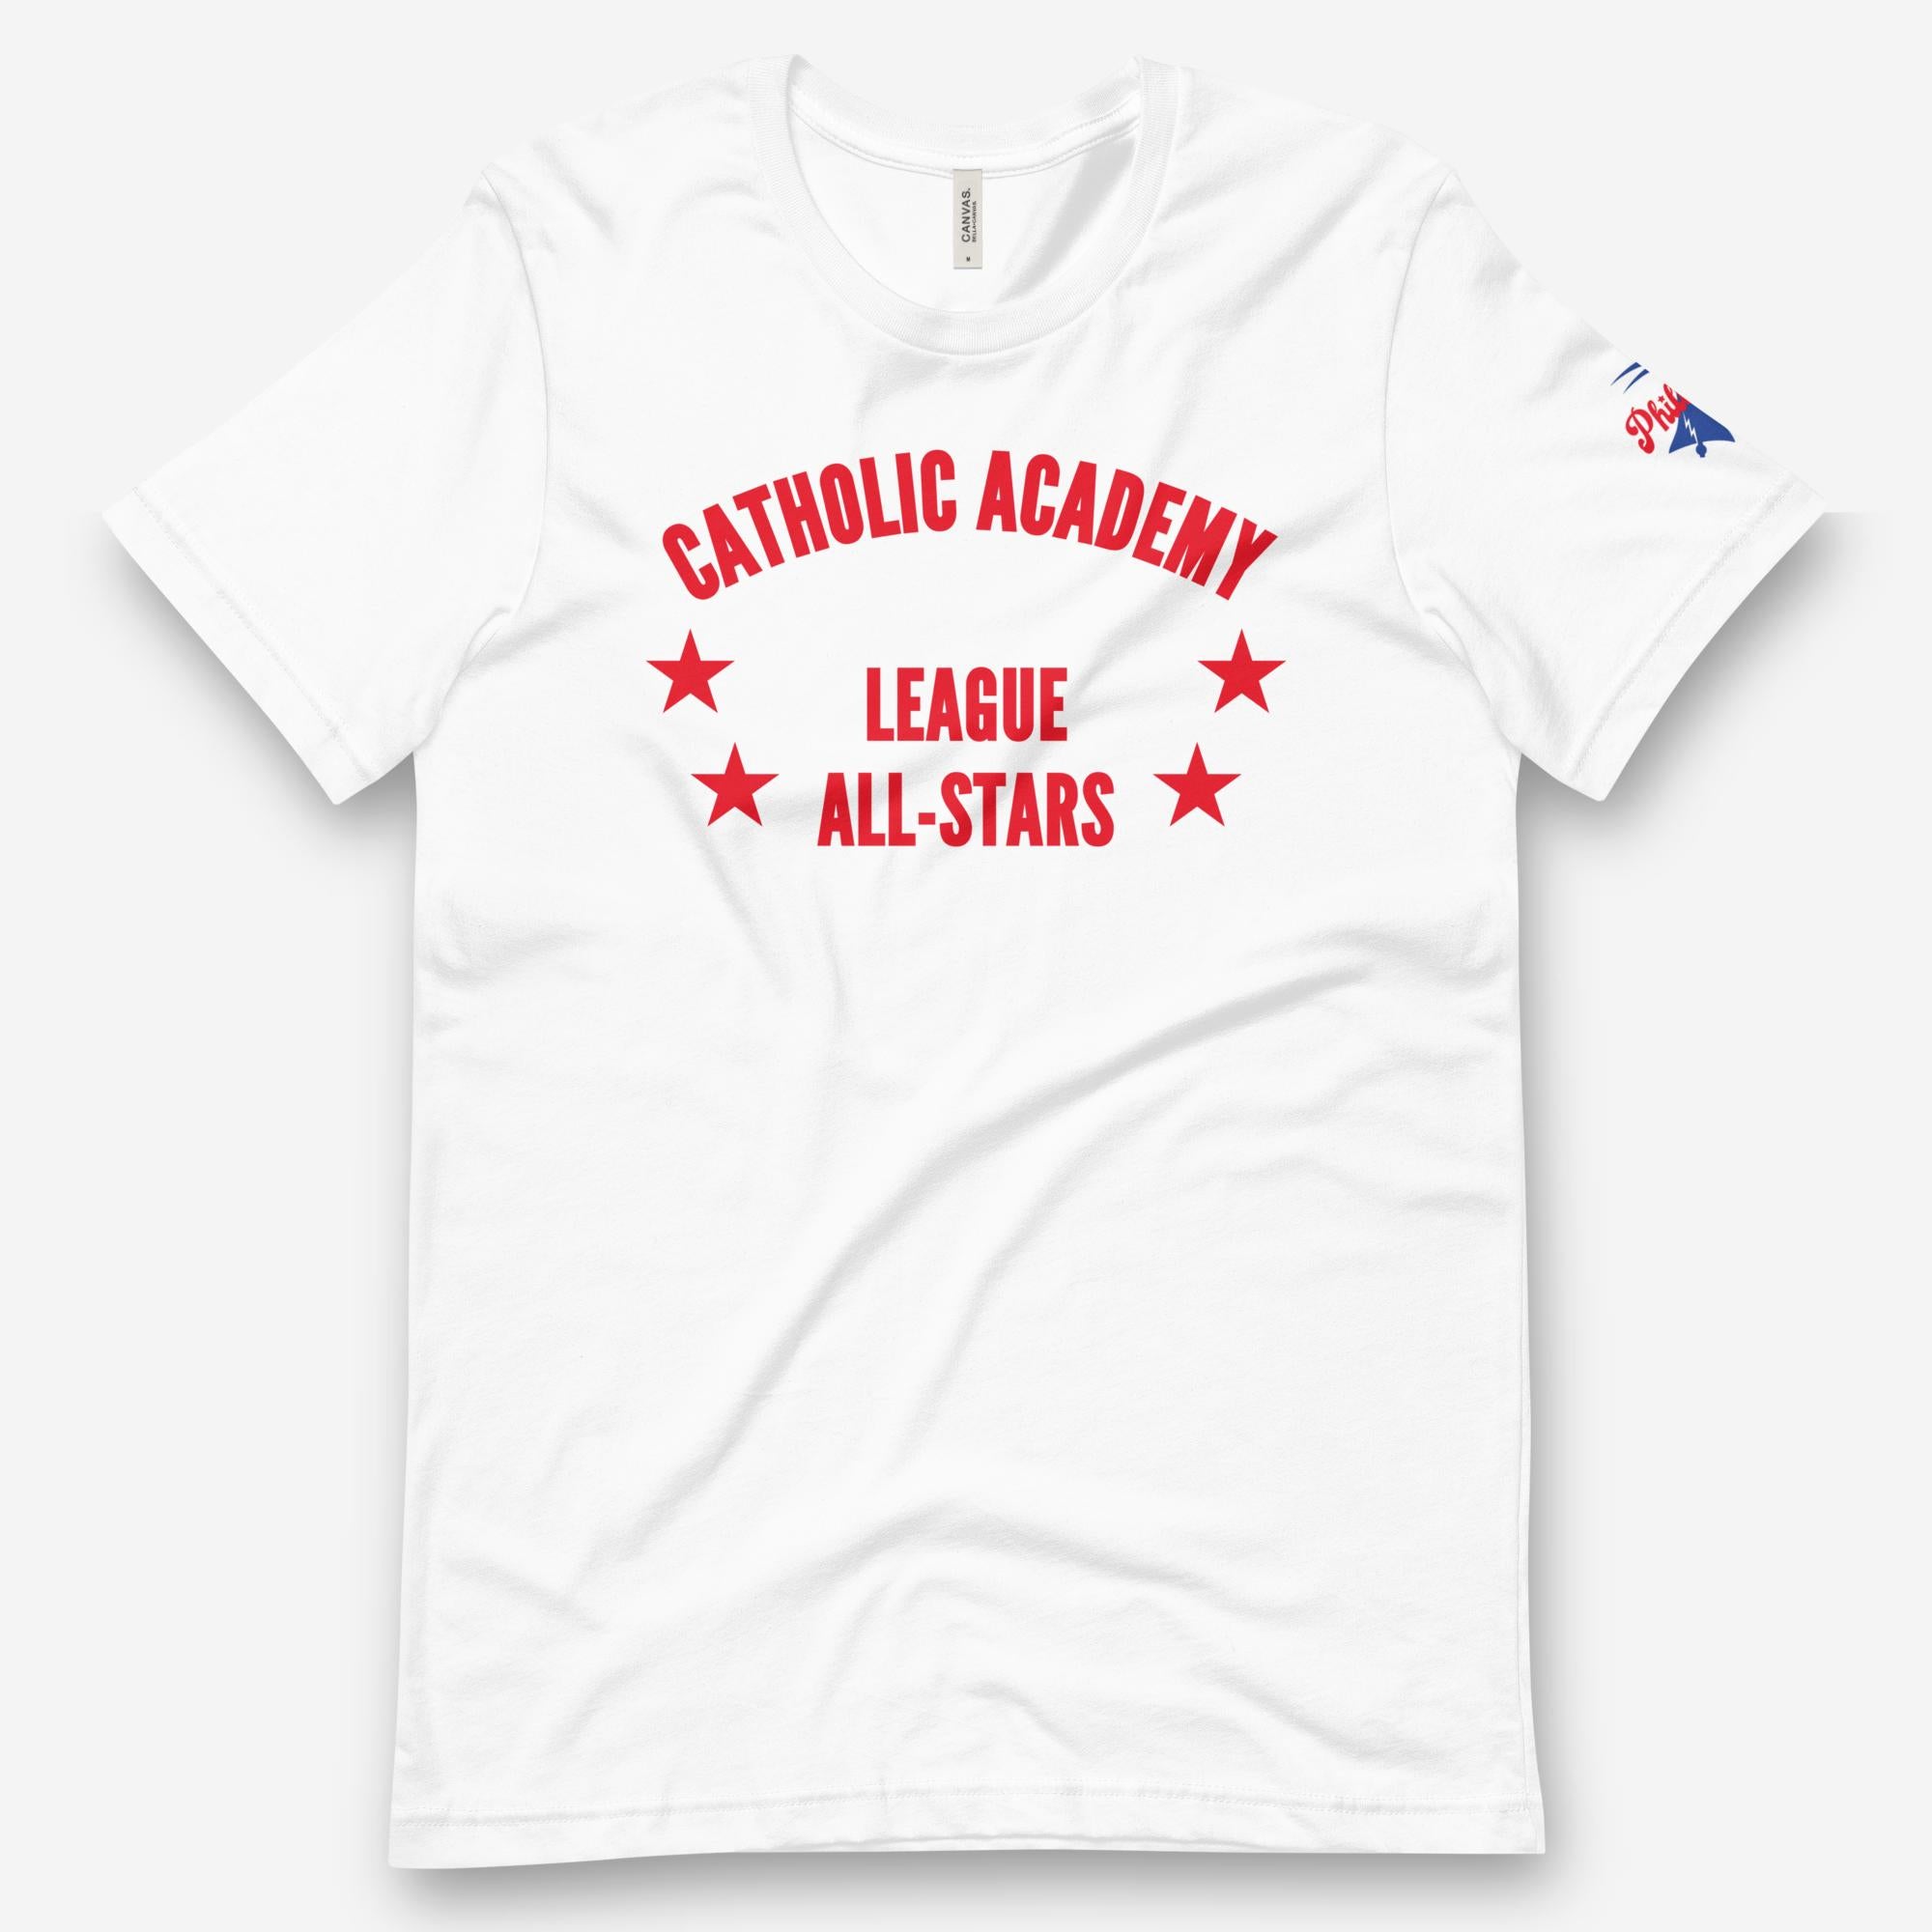 "Catholic Academy League All-Stars" Tee